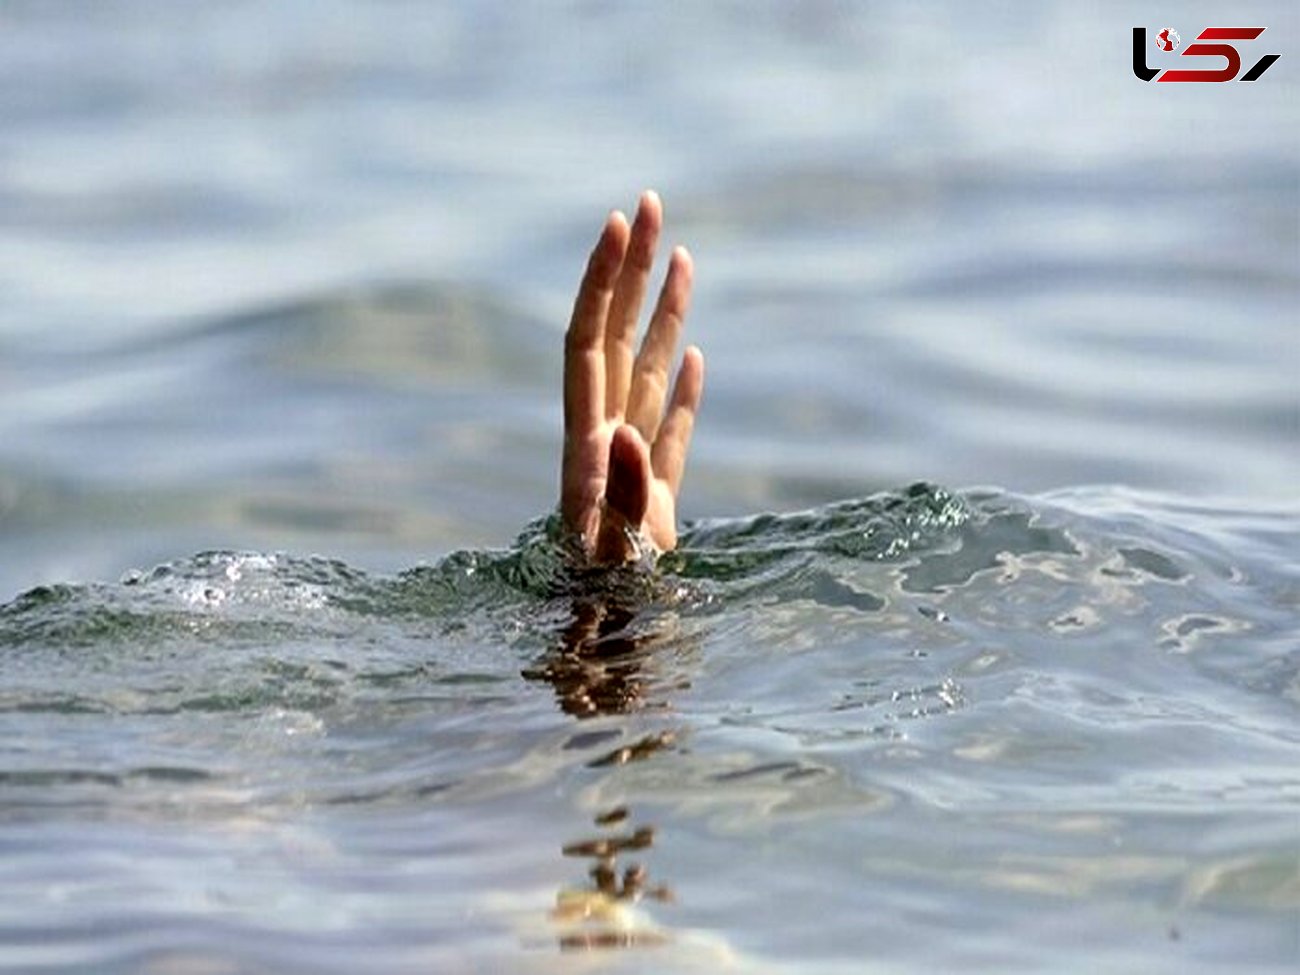 غرق شدن سه نفر در رودخانه چشمه سبز گلمکان